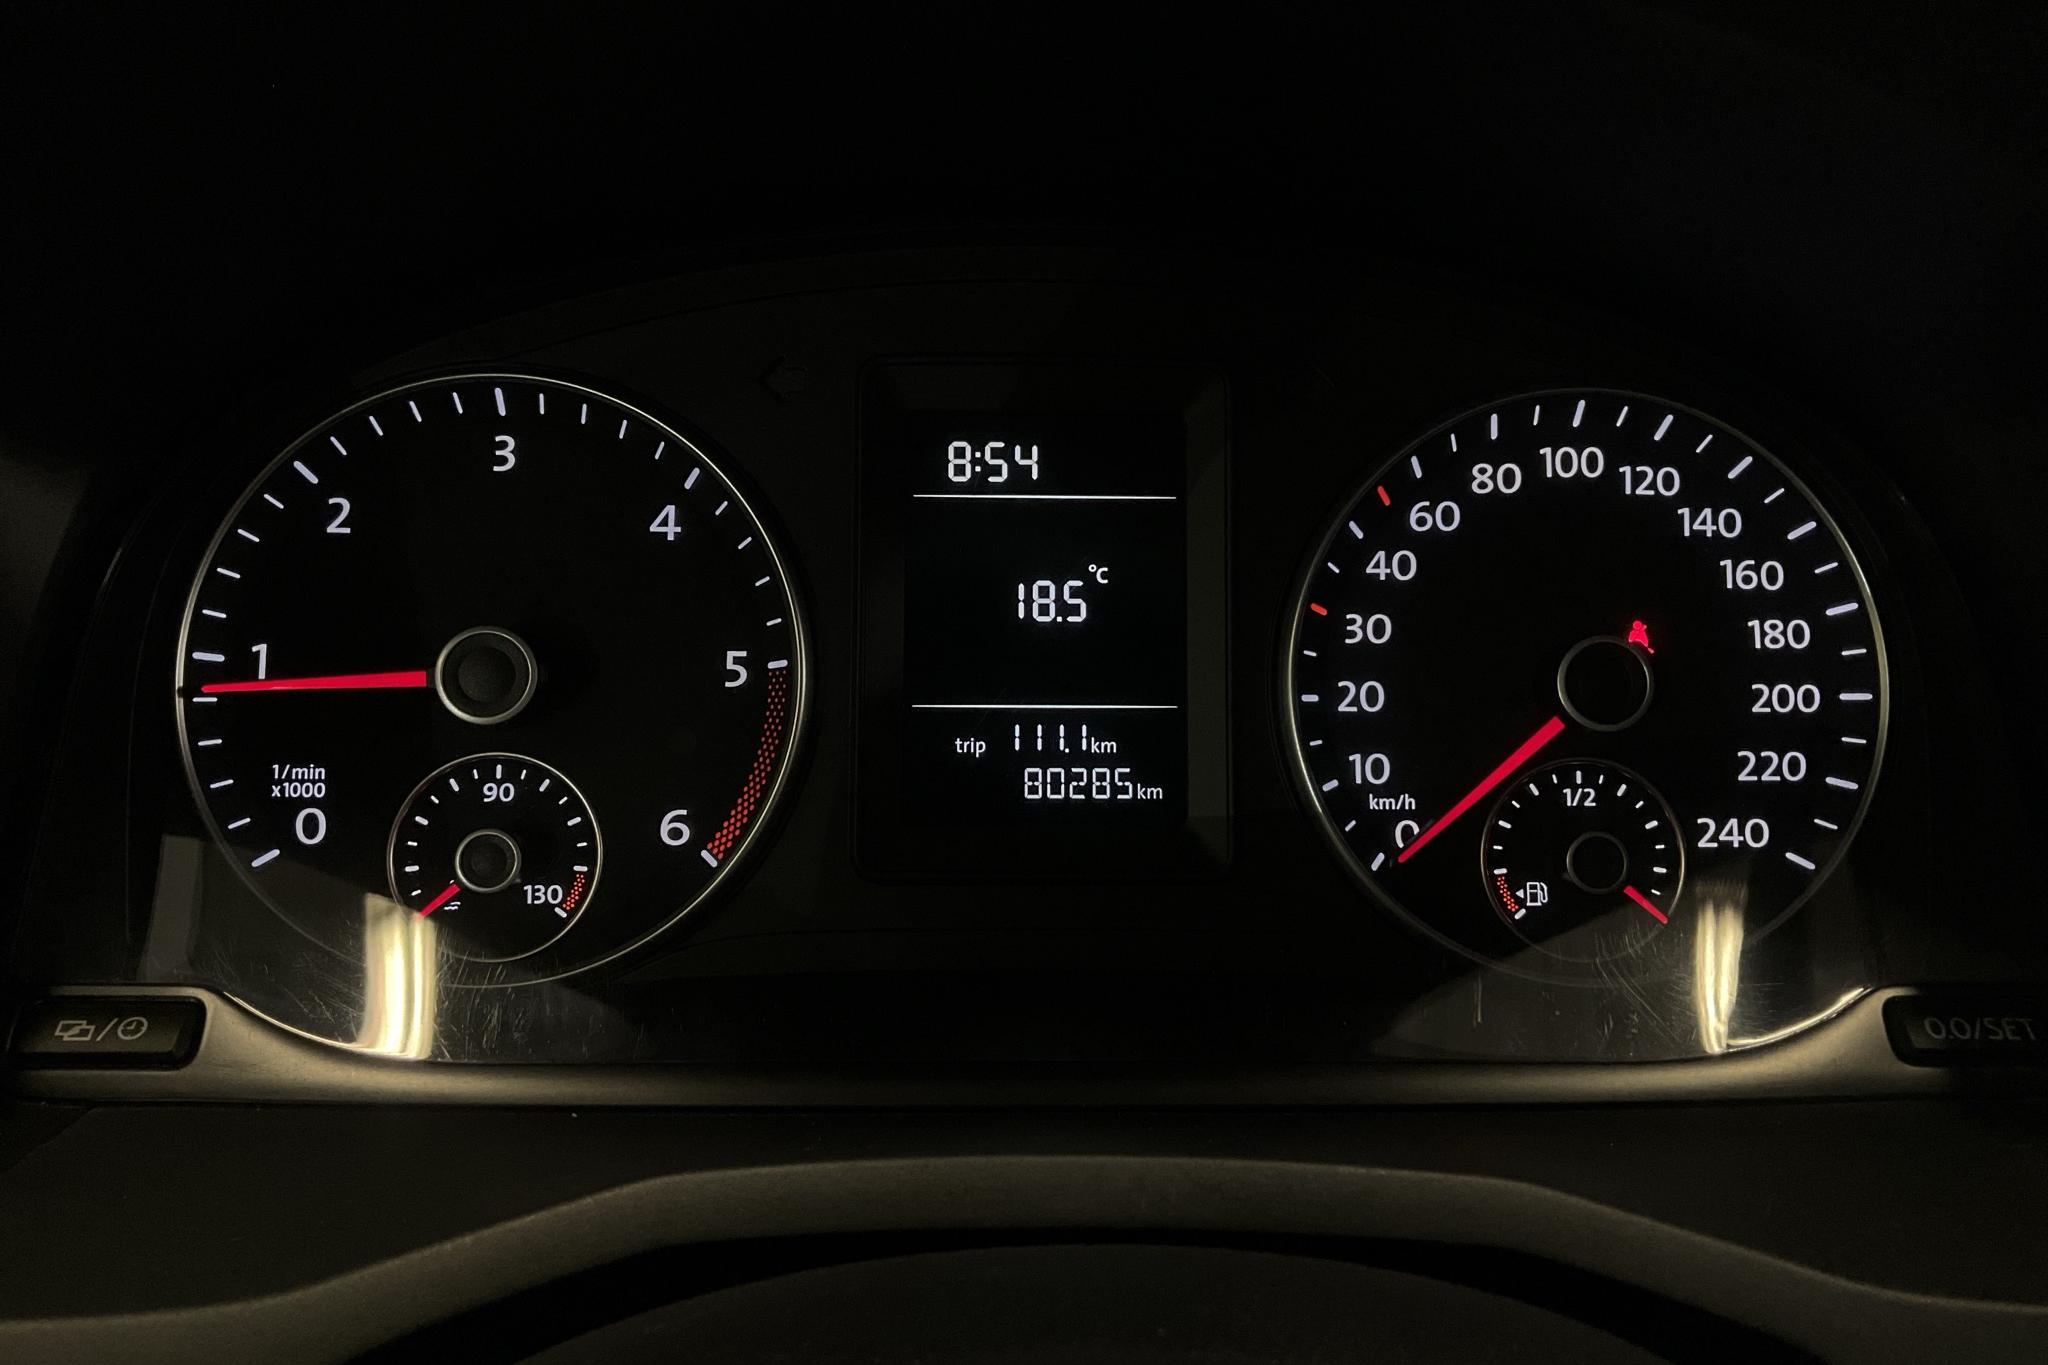 VW Caddy Life 2.0 TDI (75hk) - 8 028 mil - Manuell - vit - 2017